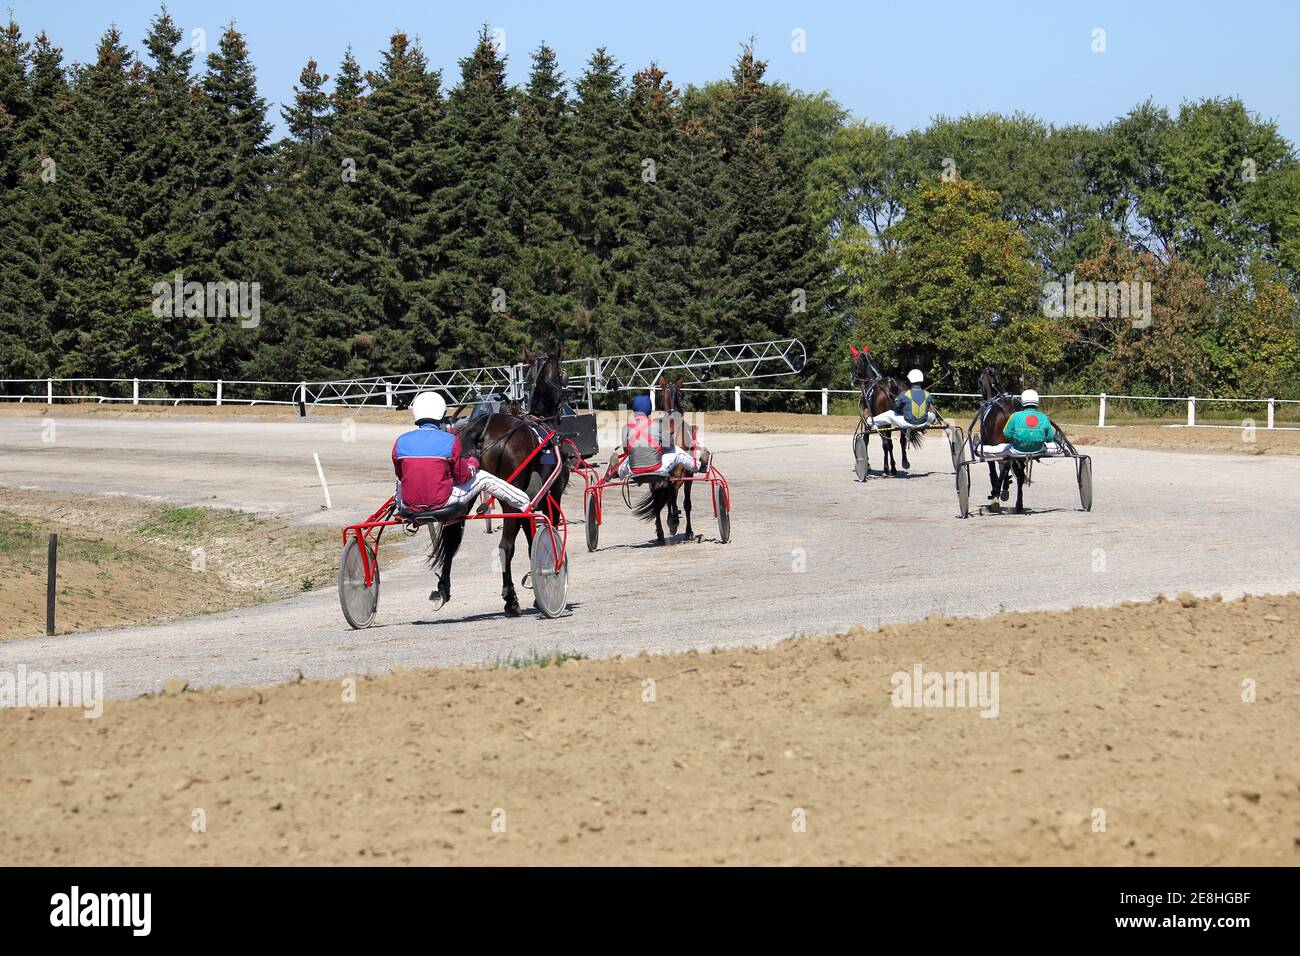 en attente de départ harnais course cheval trotter race hippodrome Banque D'Images